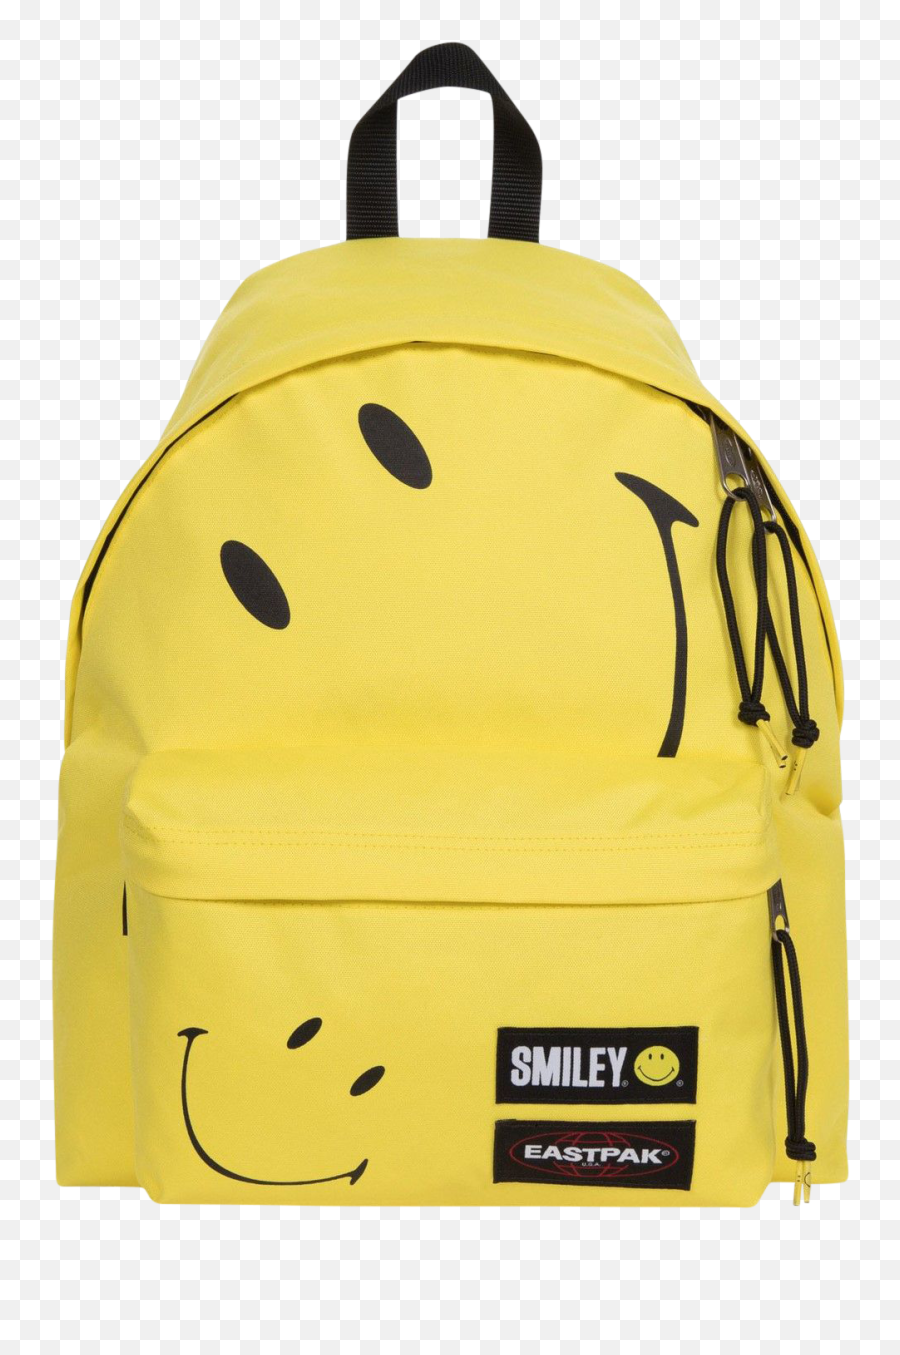 Anan - Eastpak Smiley Emoji,Jansport Emoticon Backpack